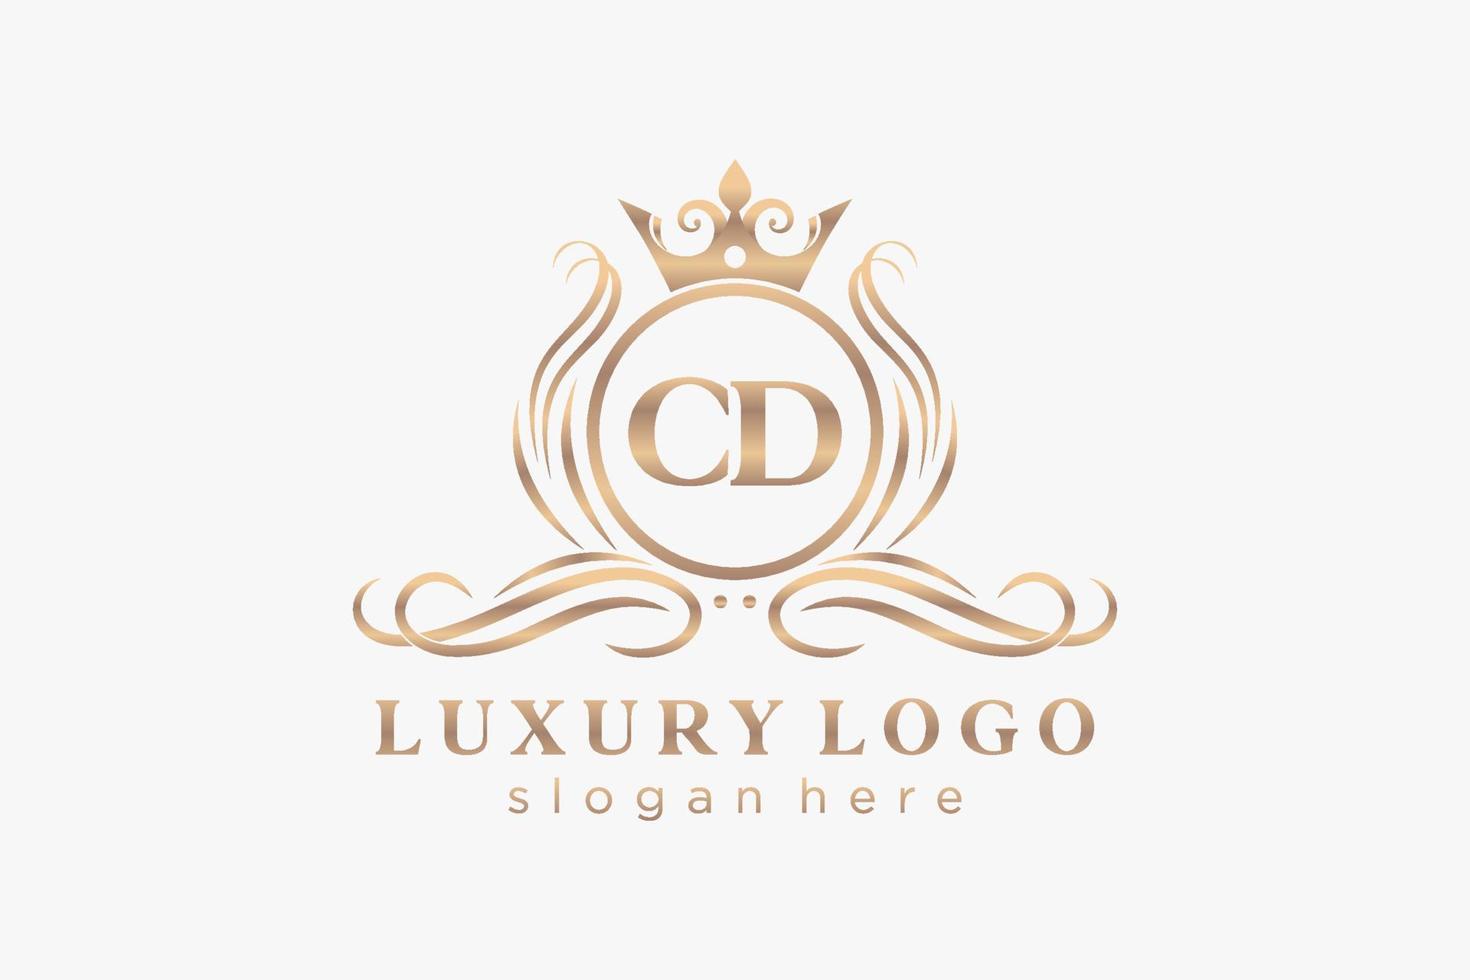 modèle de logo de luxe royal de lettre cd initiale dans l'art vectoriel pour le restaurant, la royauté, la boutique, le café, l'hôtel, l'héraldique, les bijoux, la mode et d'autres illustrations vectorielles.